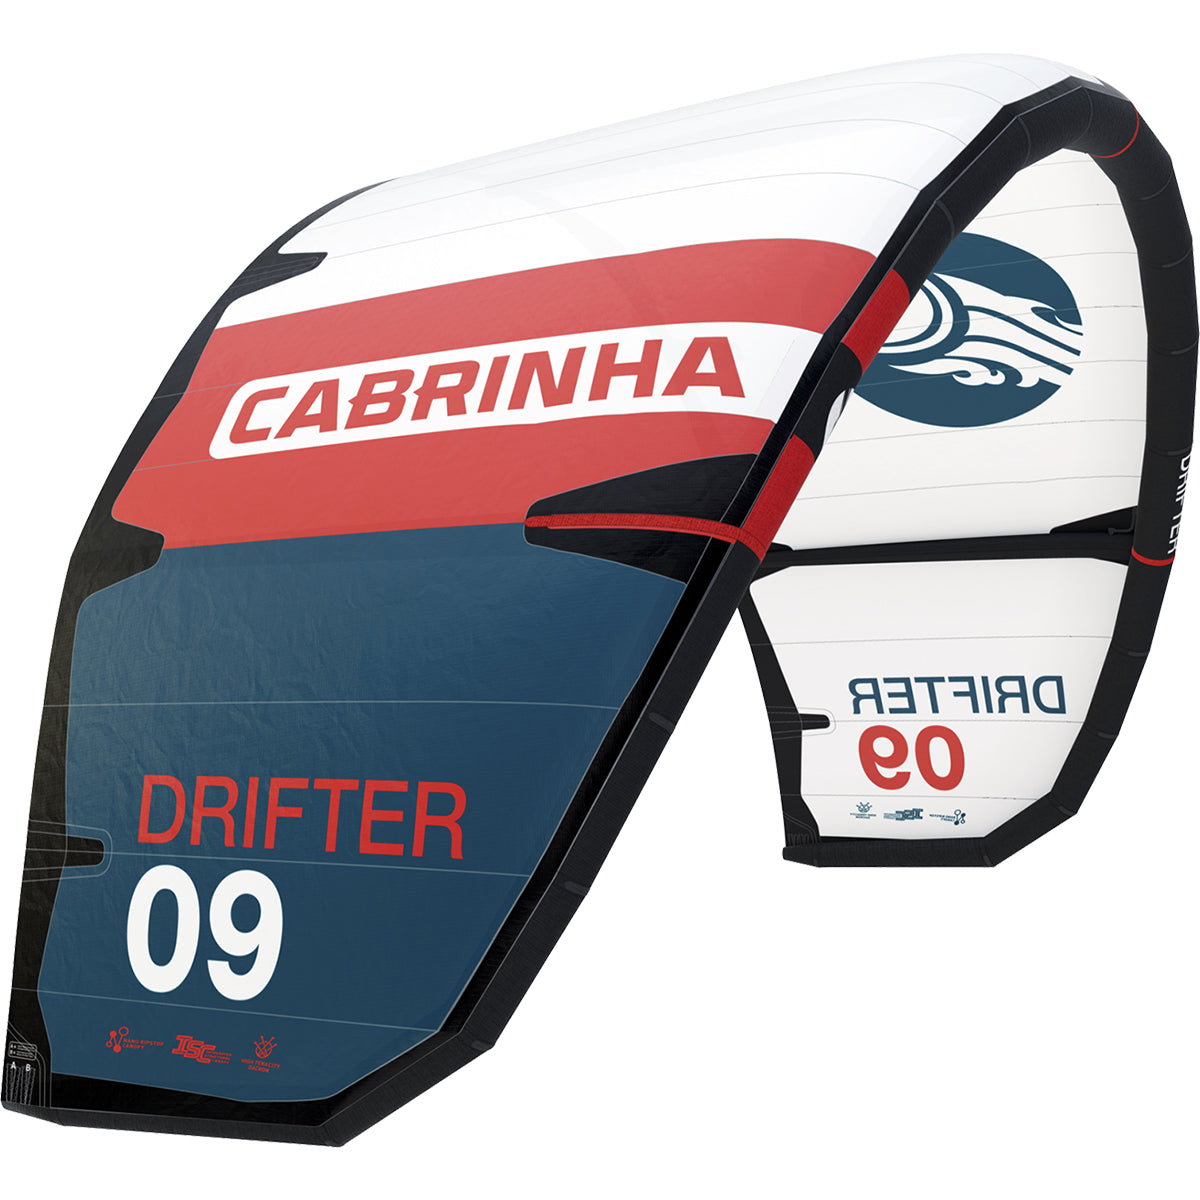 Cabrinha 24 Drifter only – Kite